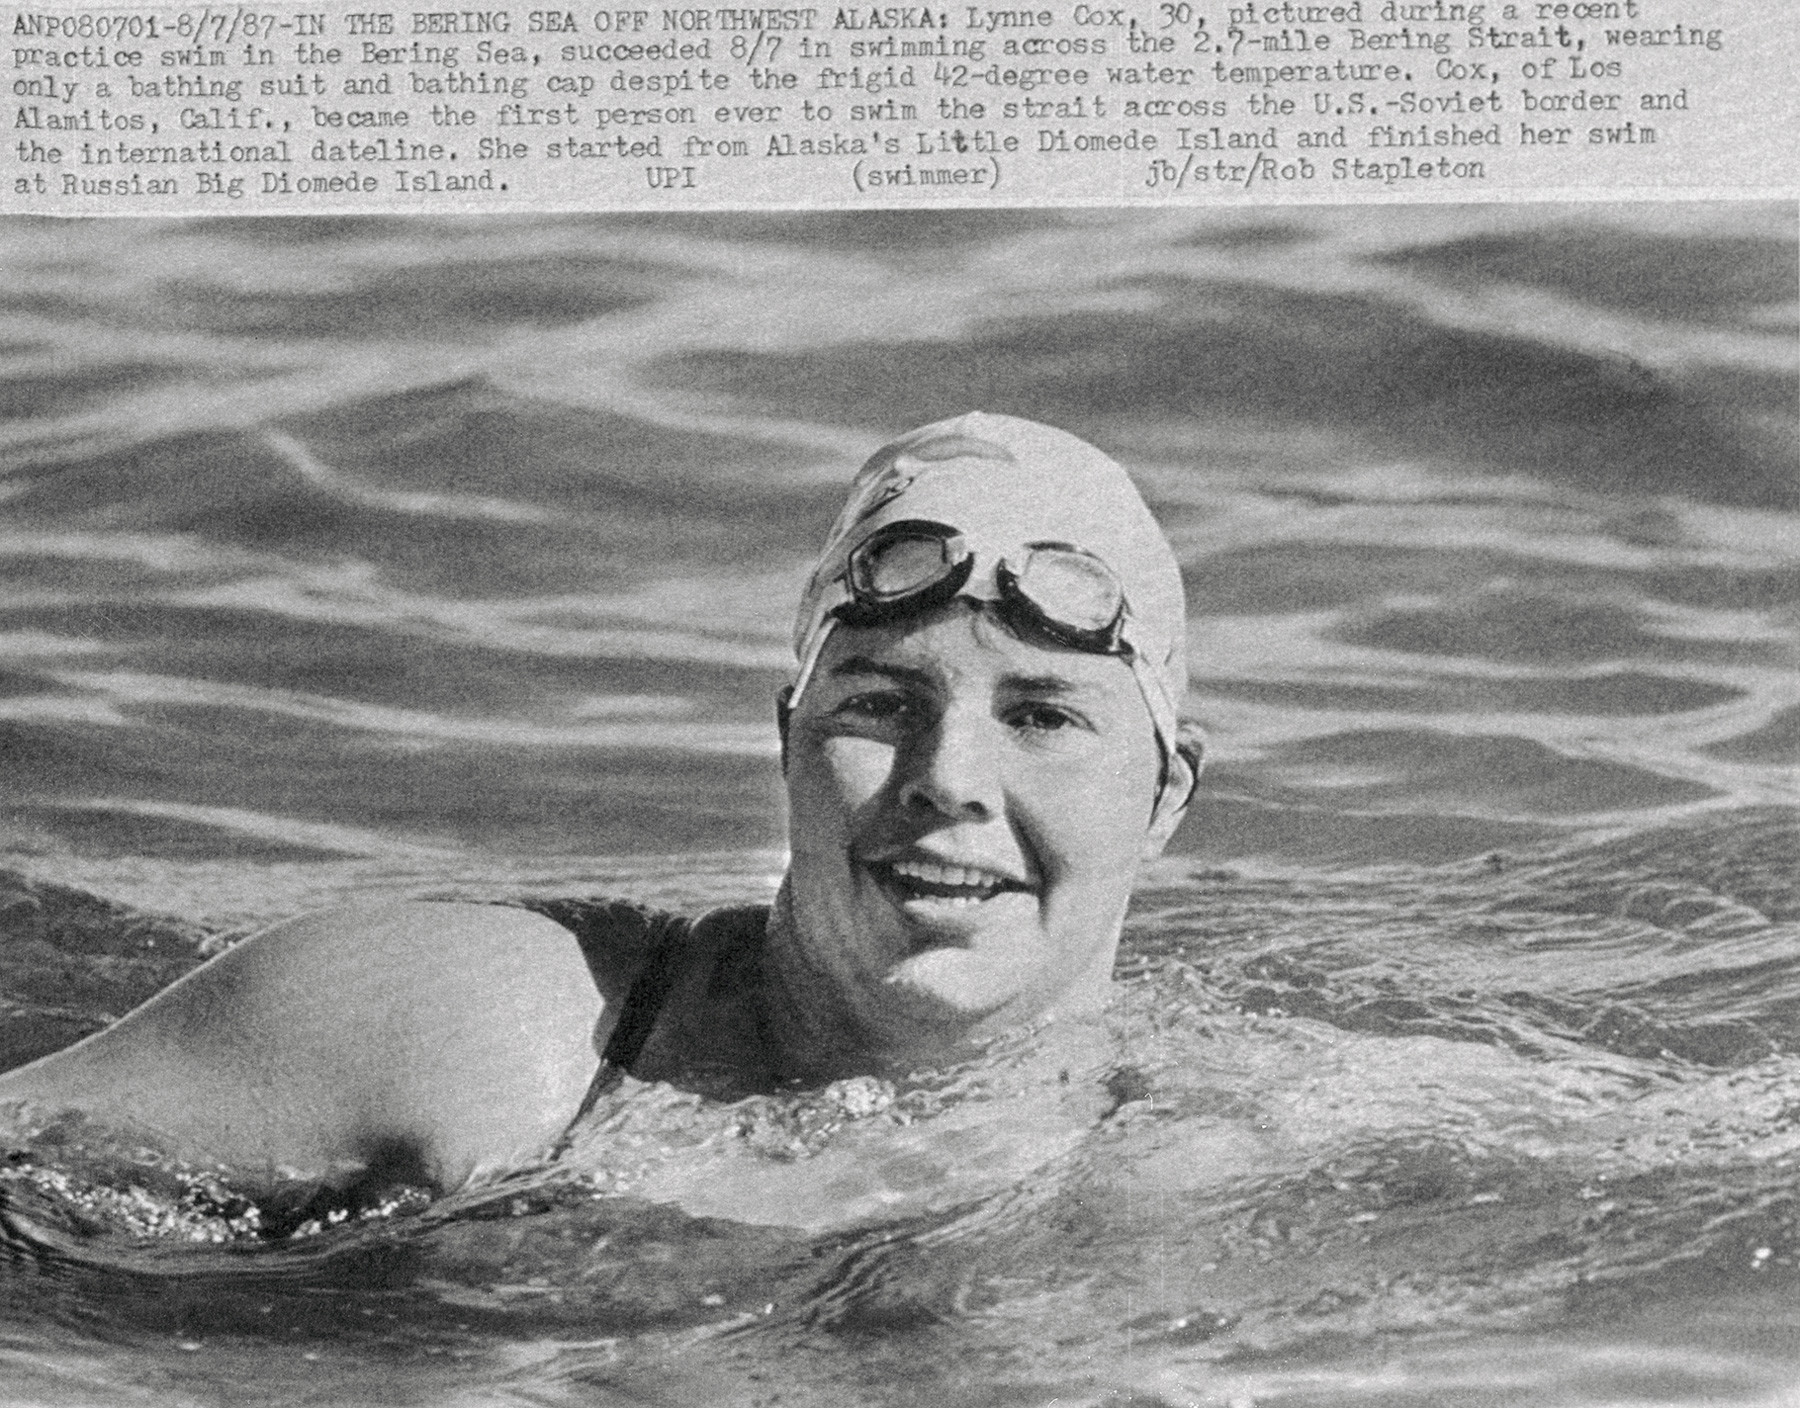 Lynne Cox, dari Los Alamitos, California, orang pertama yang berenang menyeberangi Selat Bering, melintasi perbatasan AS-Soviet dan garis waktu internasional.